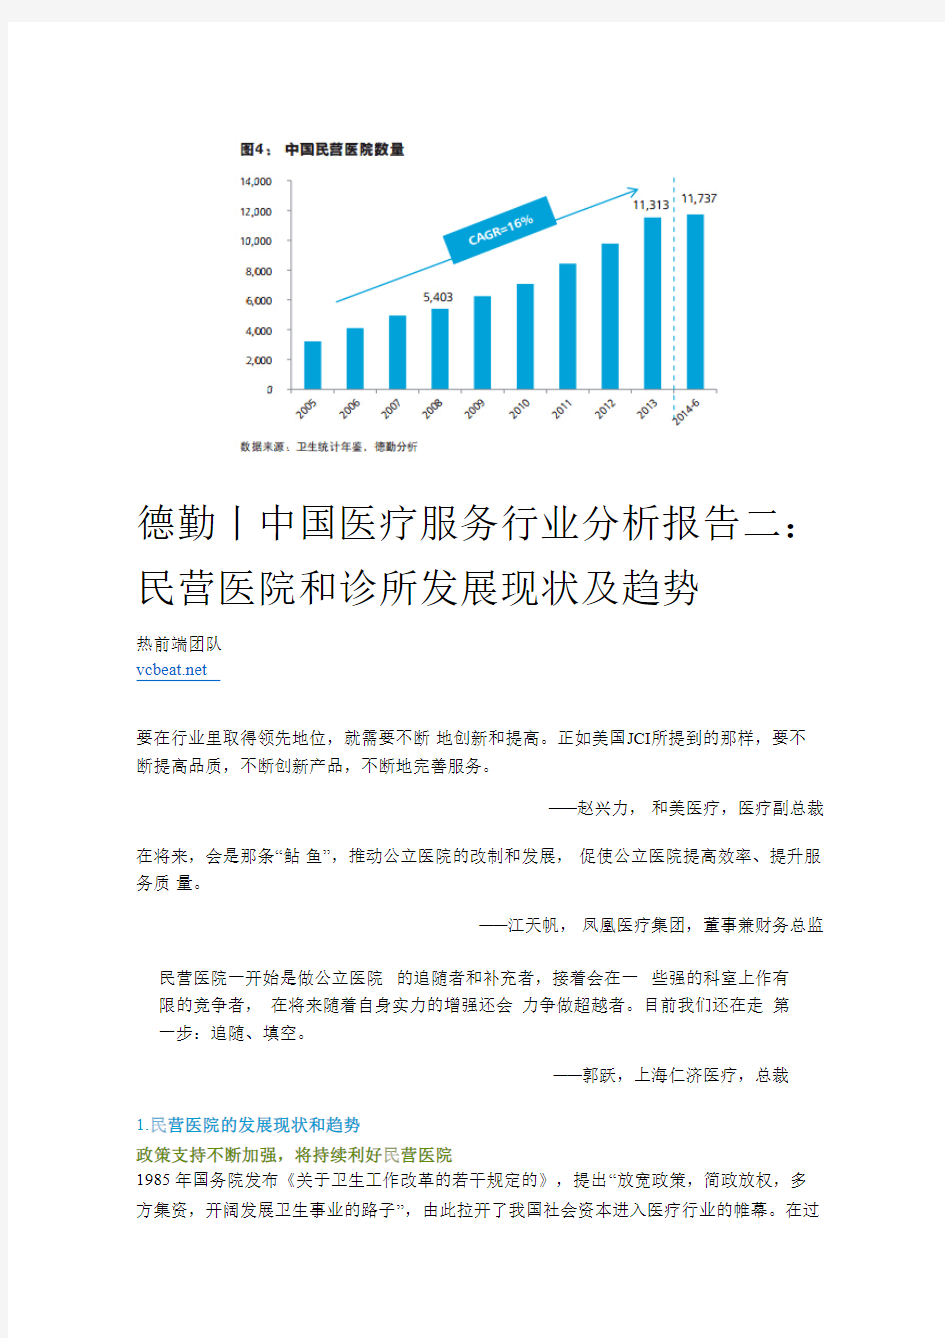 德勤丨中国医疗服务行业分析报告二：民营医院和诊所发展现状及趋势